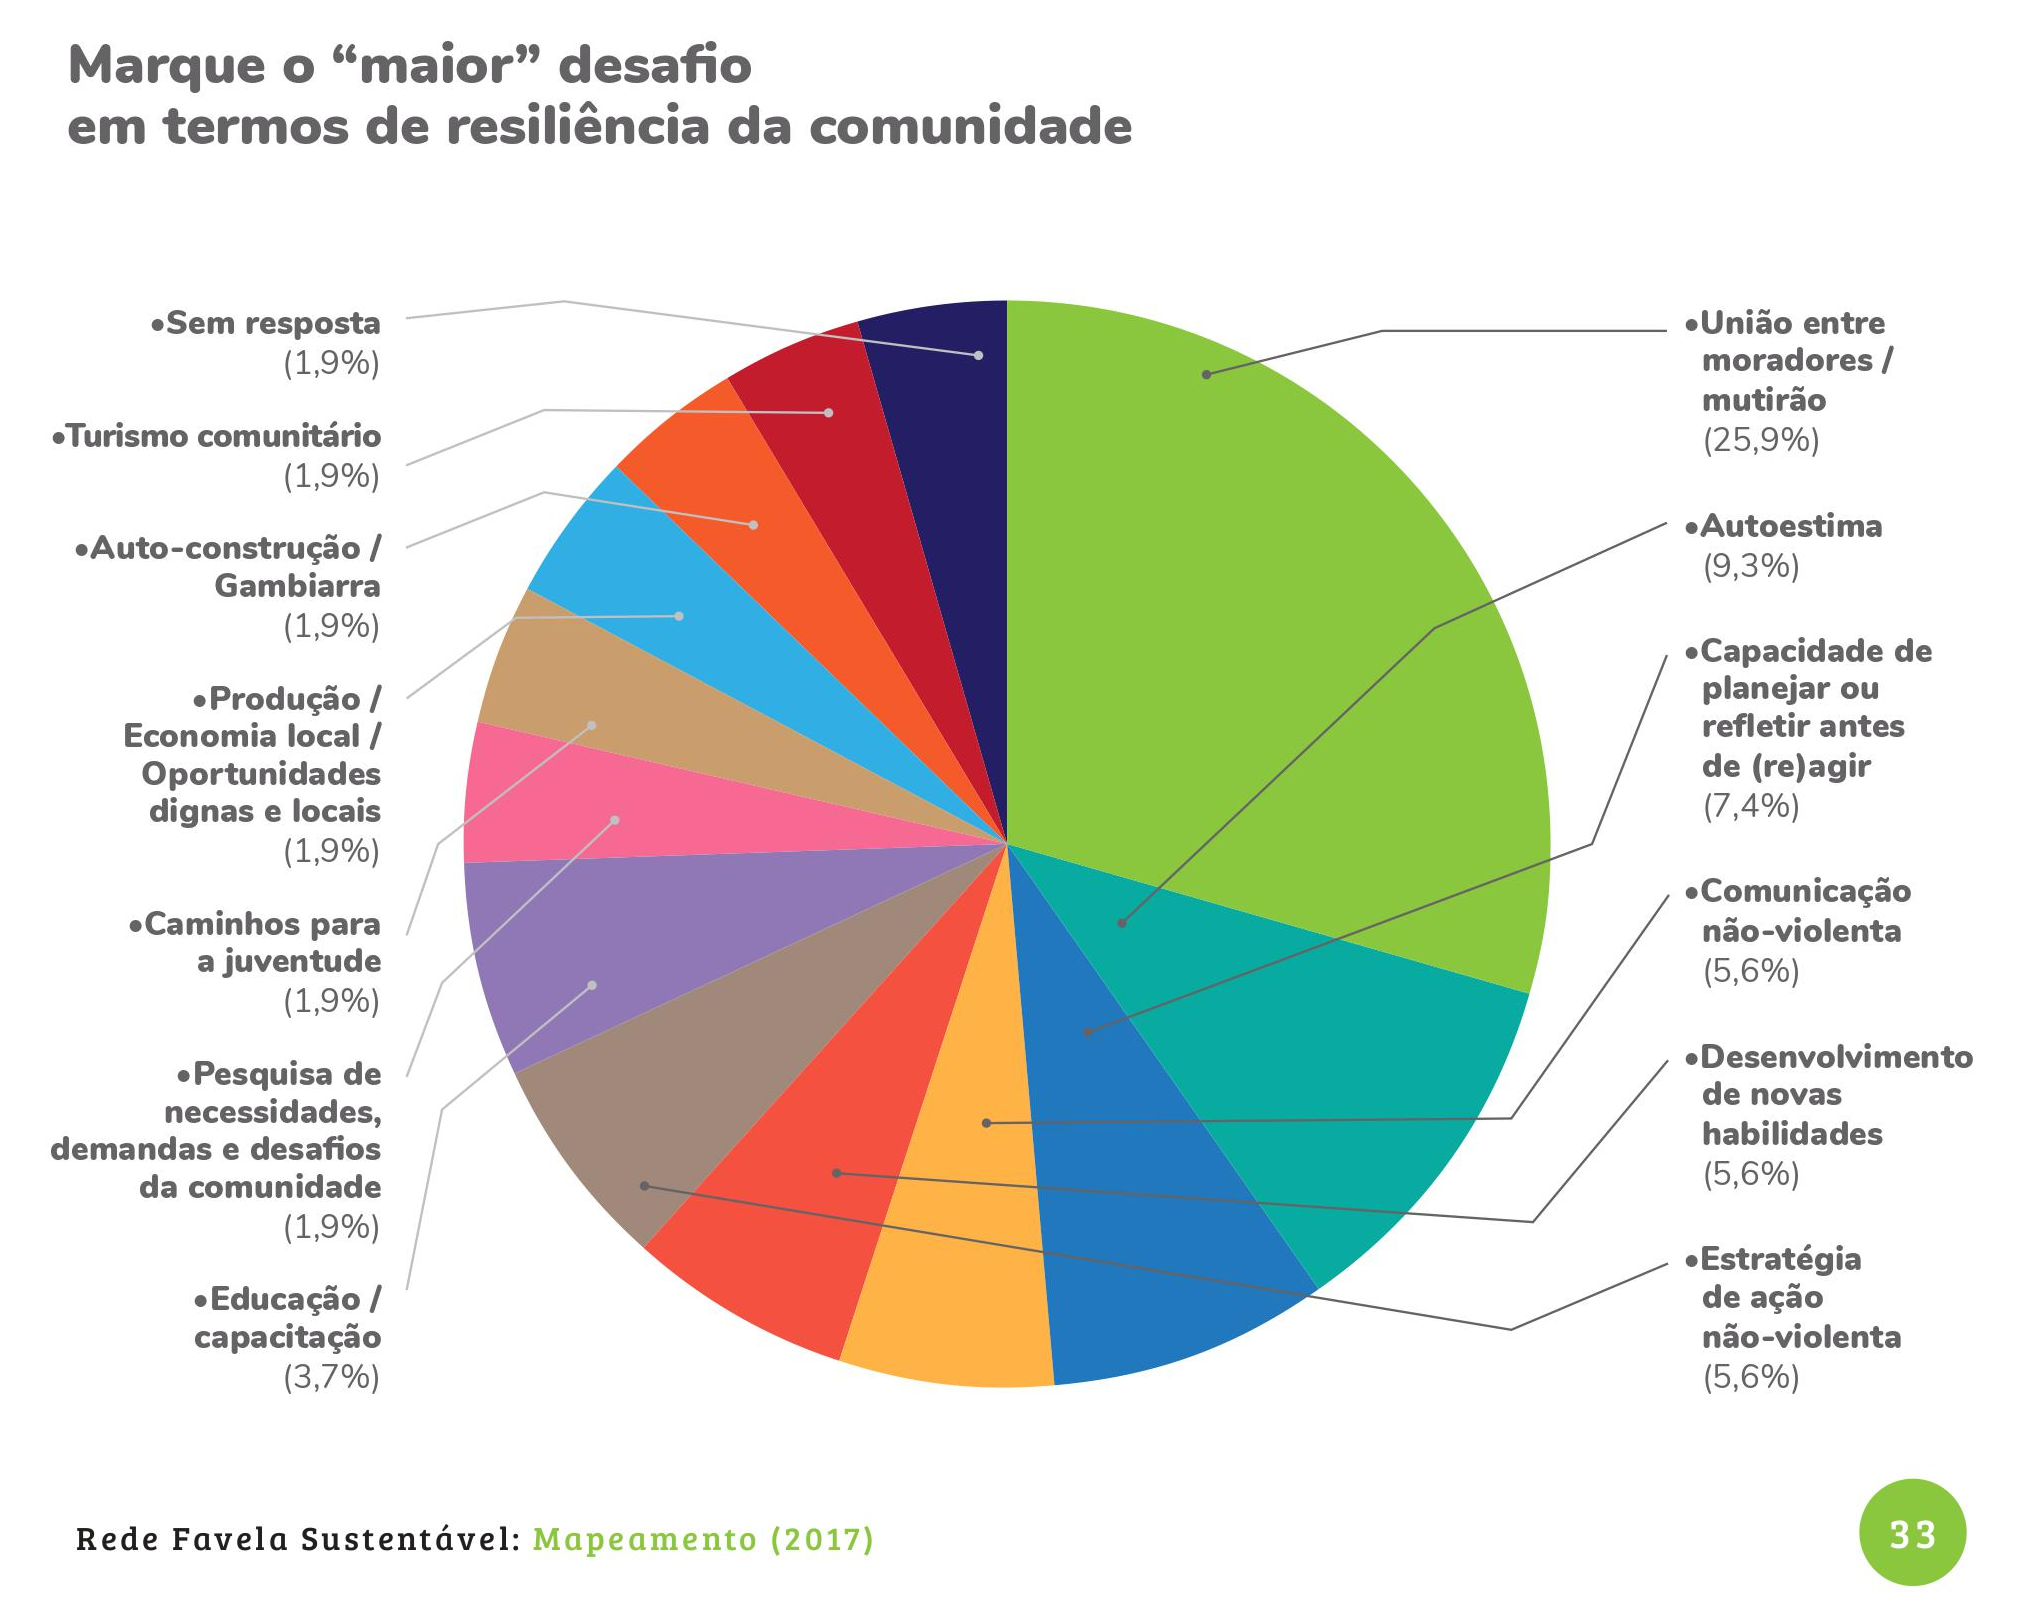 Gráfico do Rede Relatório Final do Mapeamento da Rede Favela Sustentável (2017)